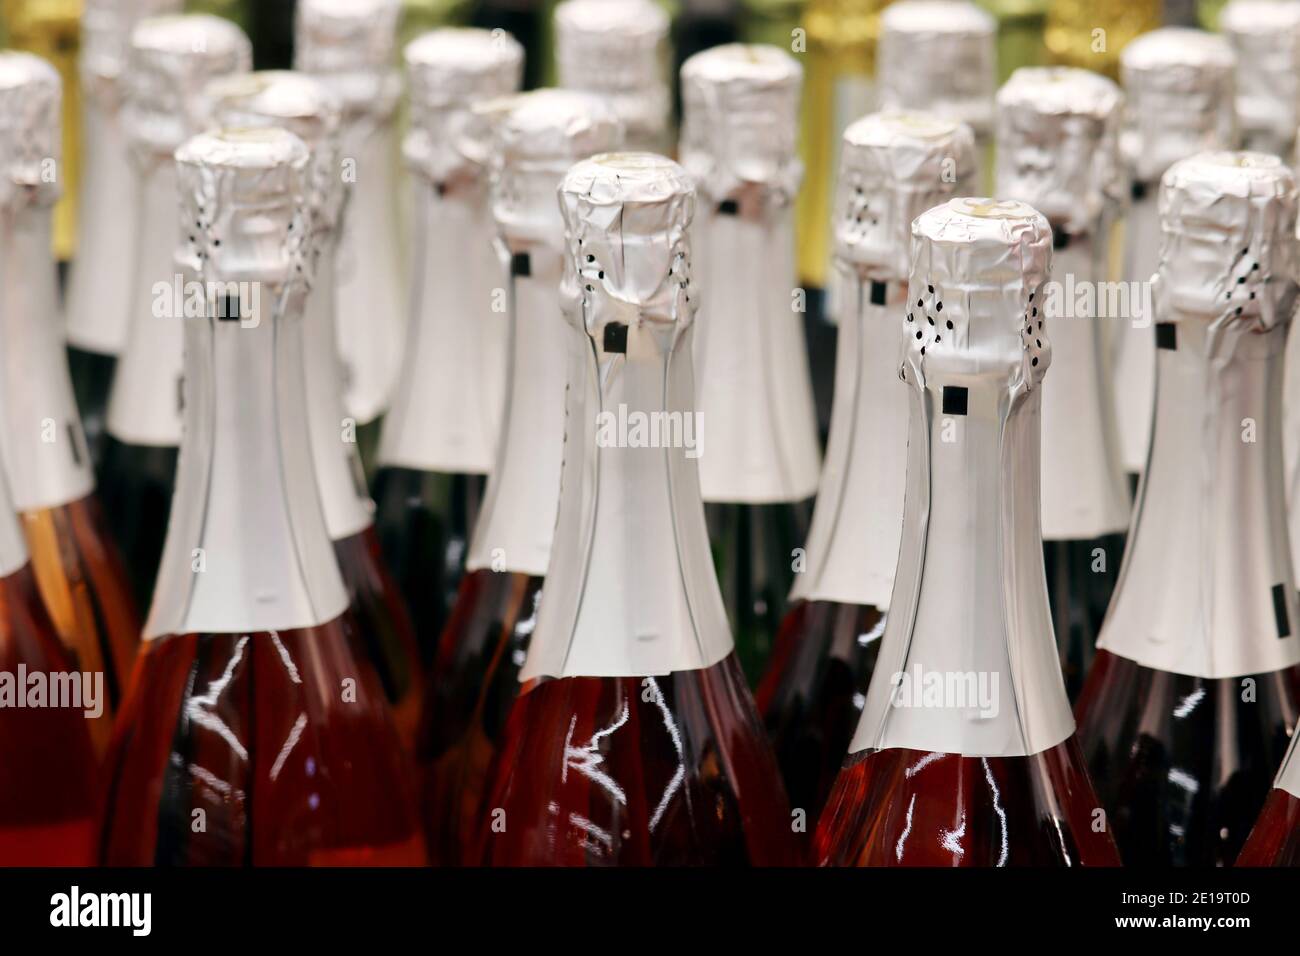 Bottiglie di vino frizzante in un supermercato. Champagne in enoteca, industria dell'alcol Foto Stock